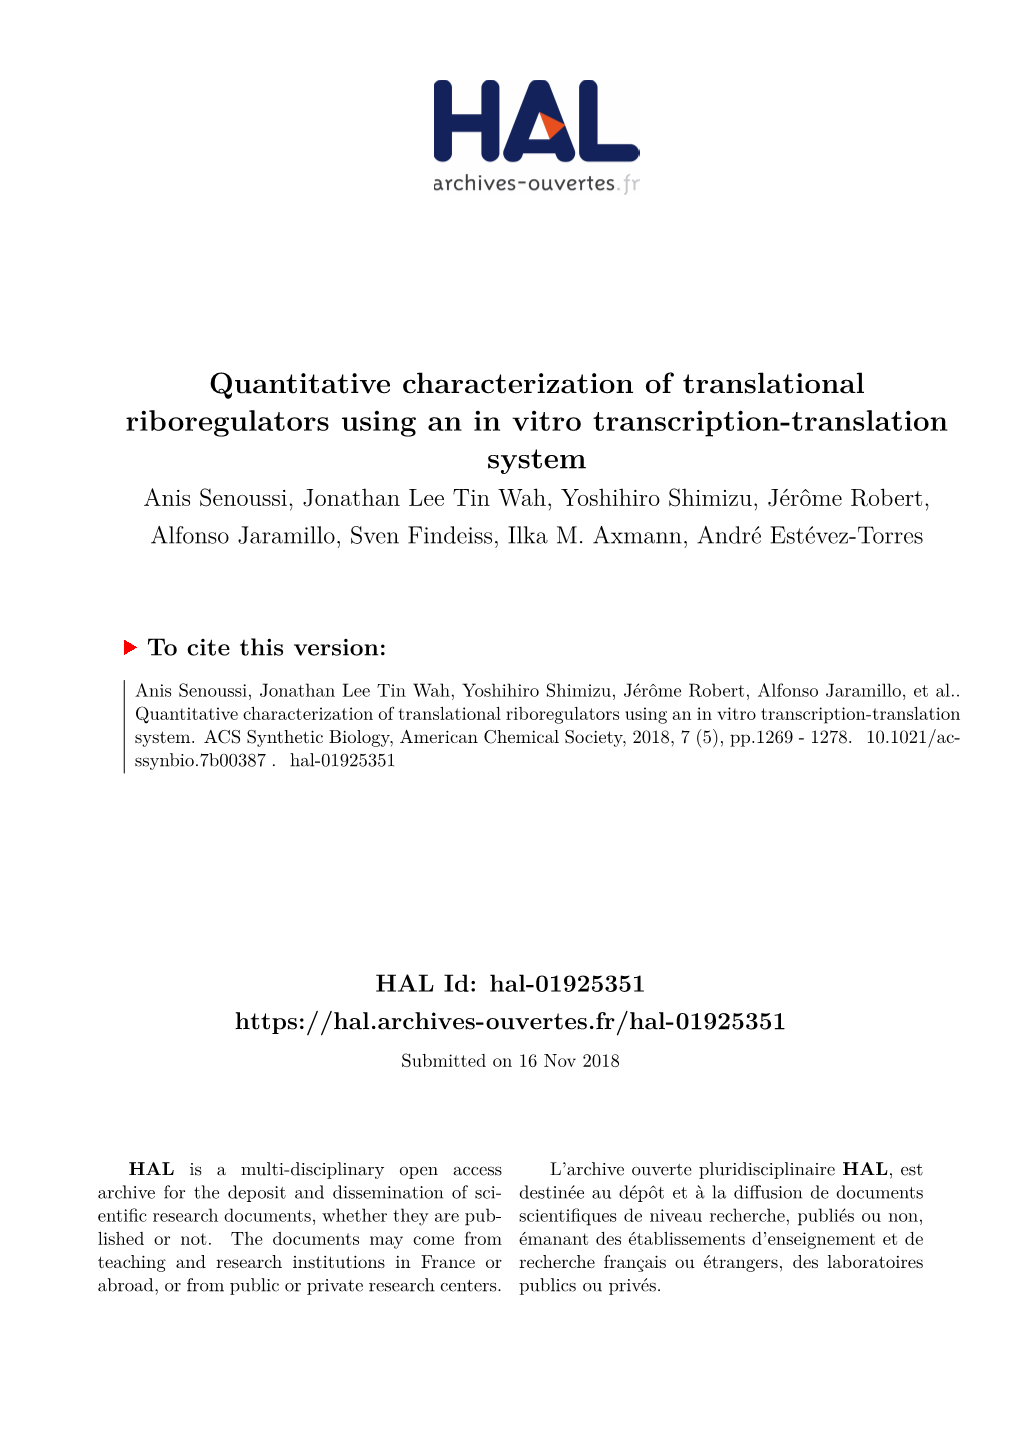 Quantitative Characterization of Translational